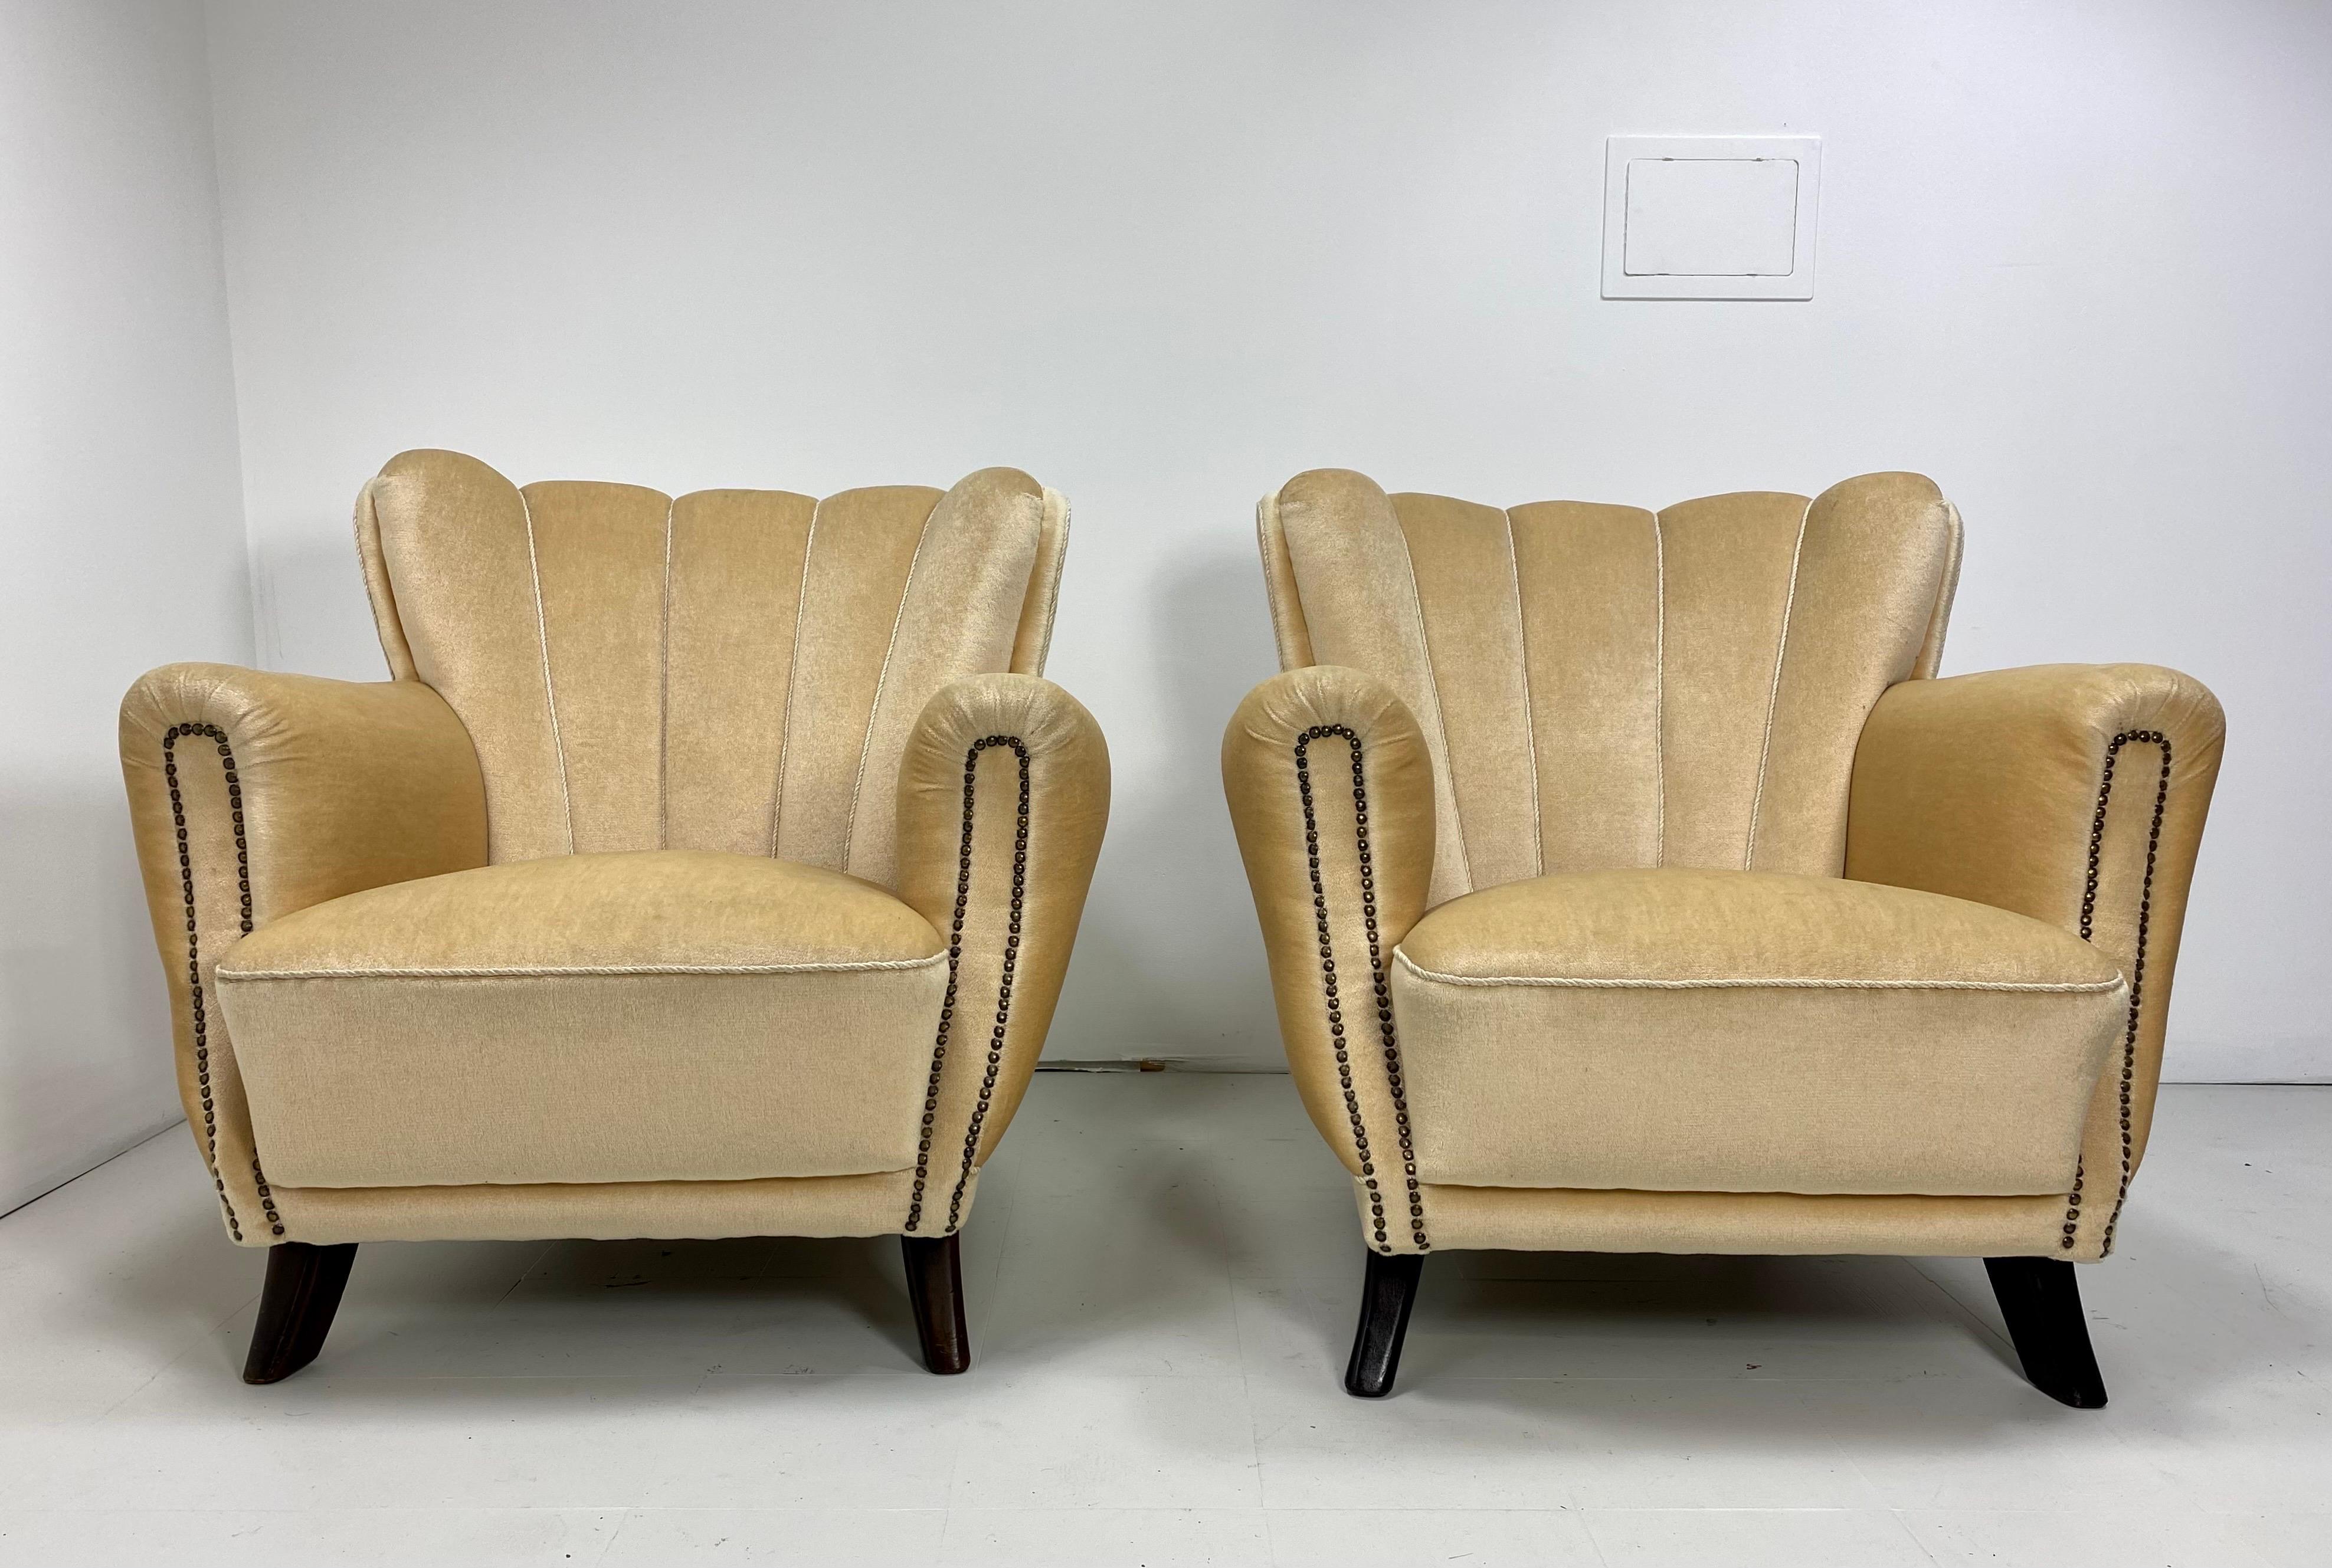 Paar schwedische Loungesessel aus den 1930er Jahren. Beine aus gebeizter Buche. Samtpolsterung im Vintage-Stil. Geformte Polsterung entlang des Profils der Stühle. Details mit Nagelkopf. 